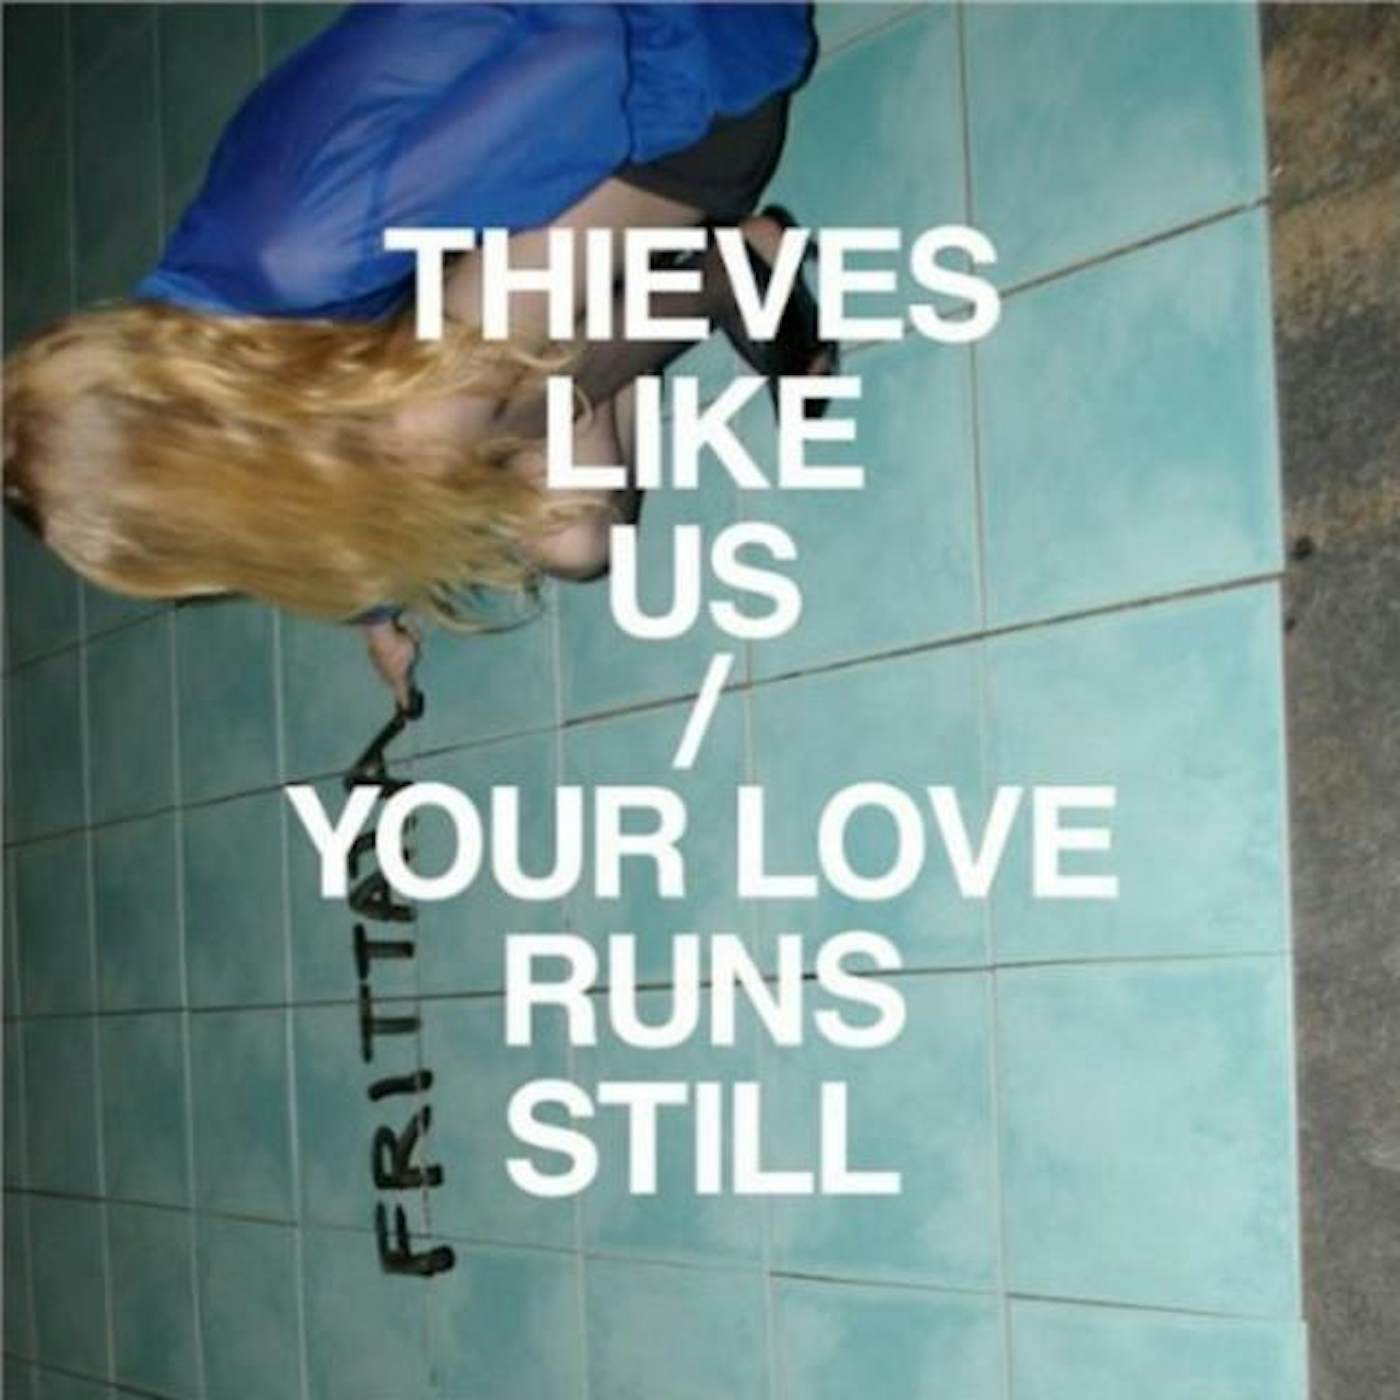 Thieves Like Us